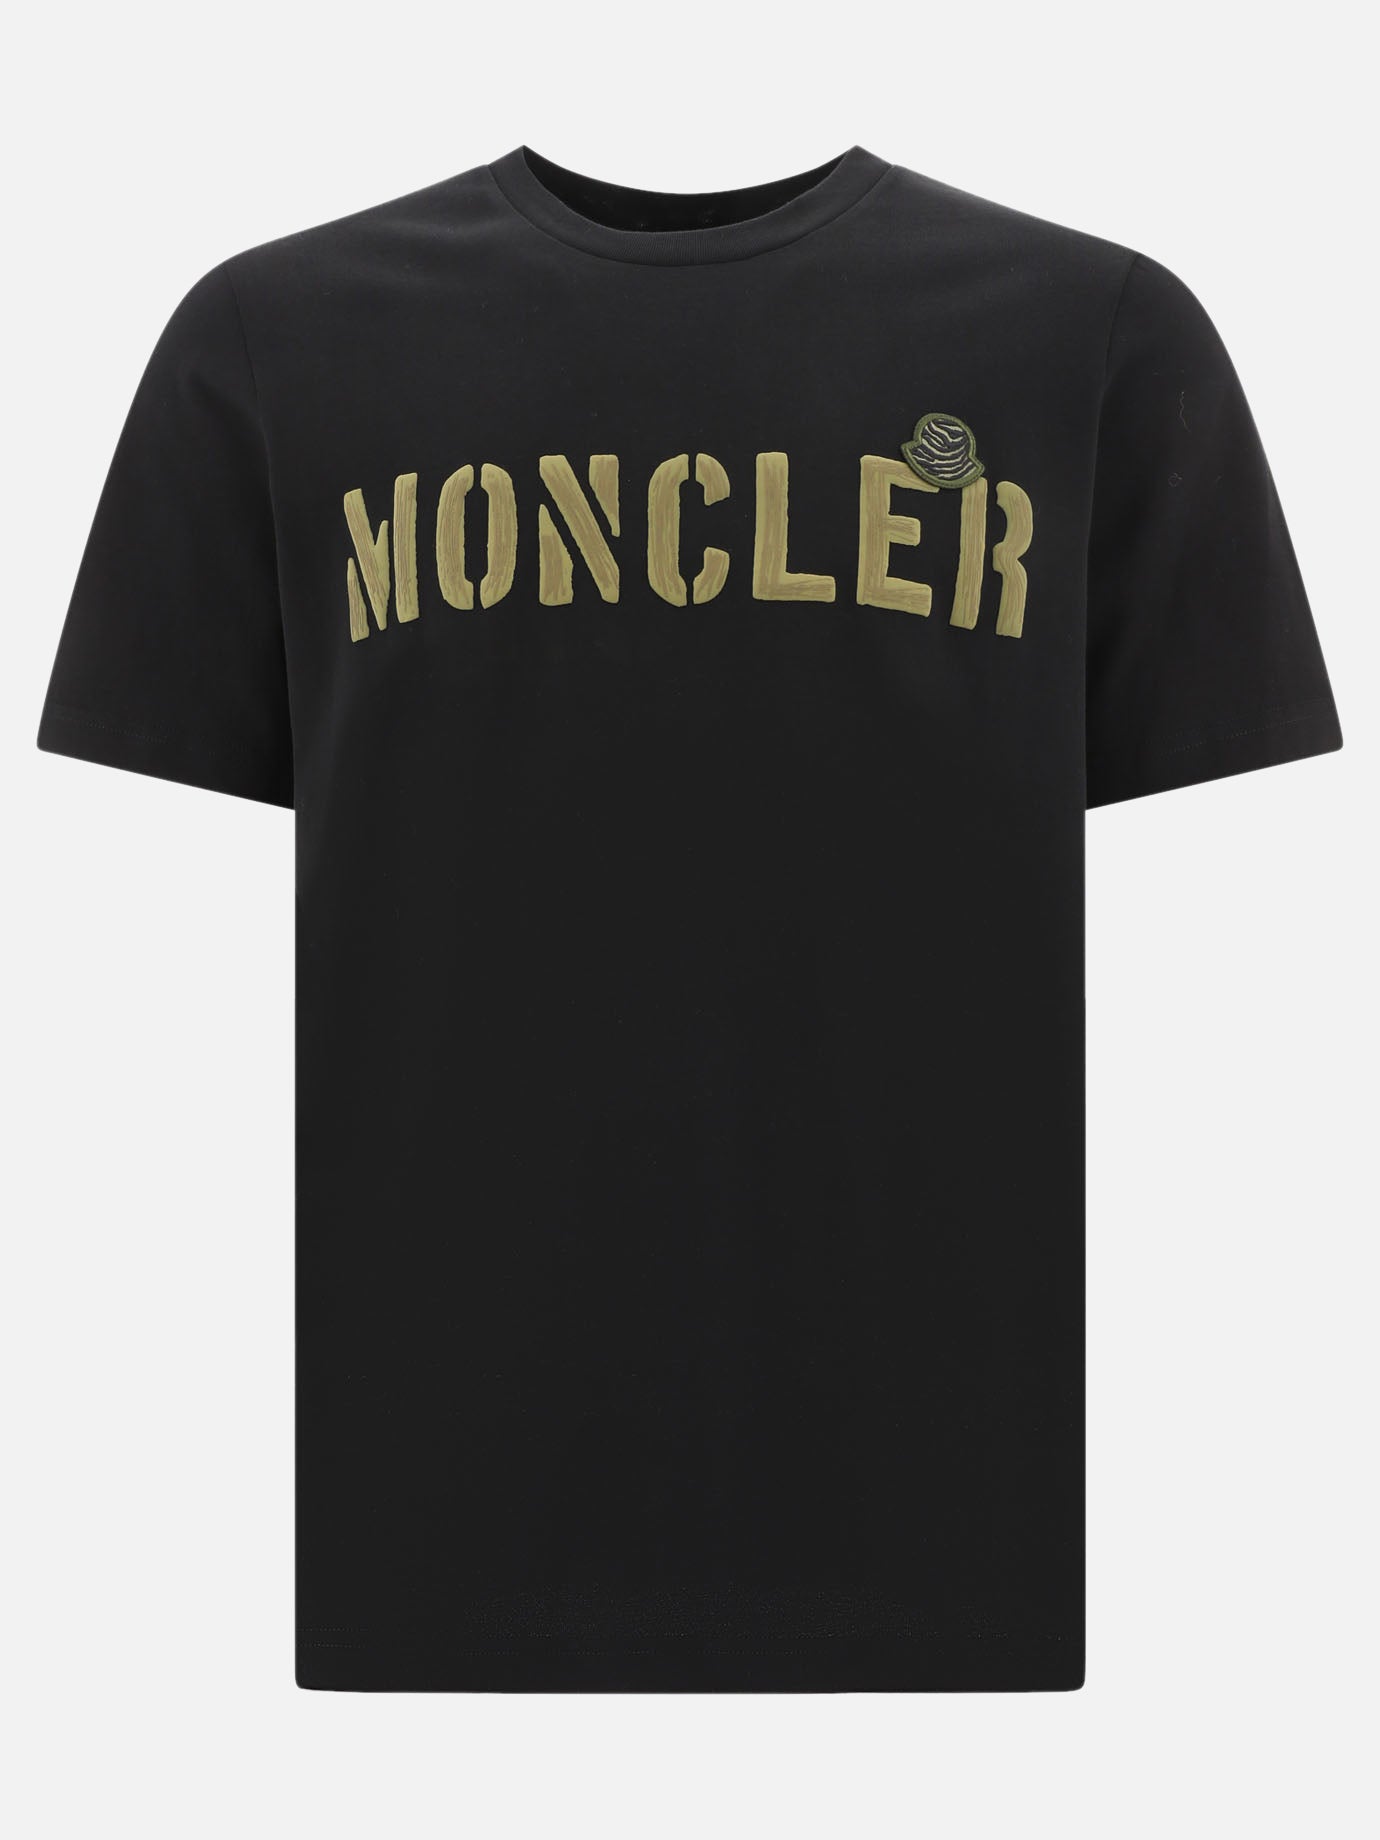 "Moncler Camo" t-shirt